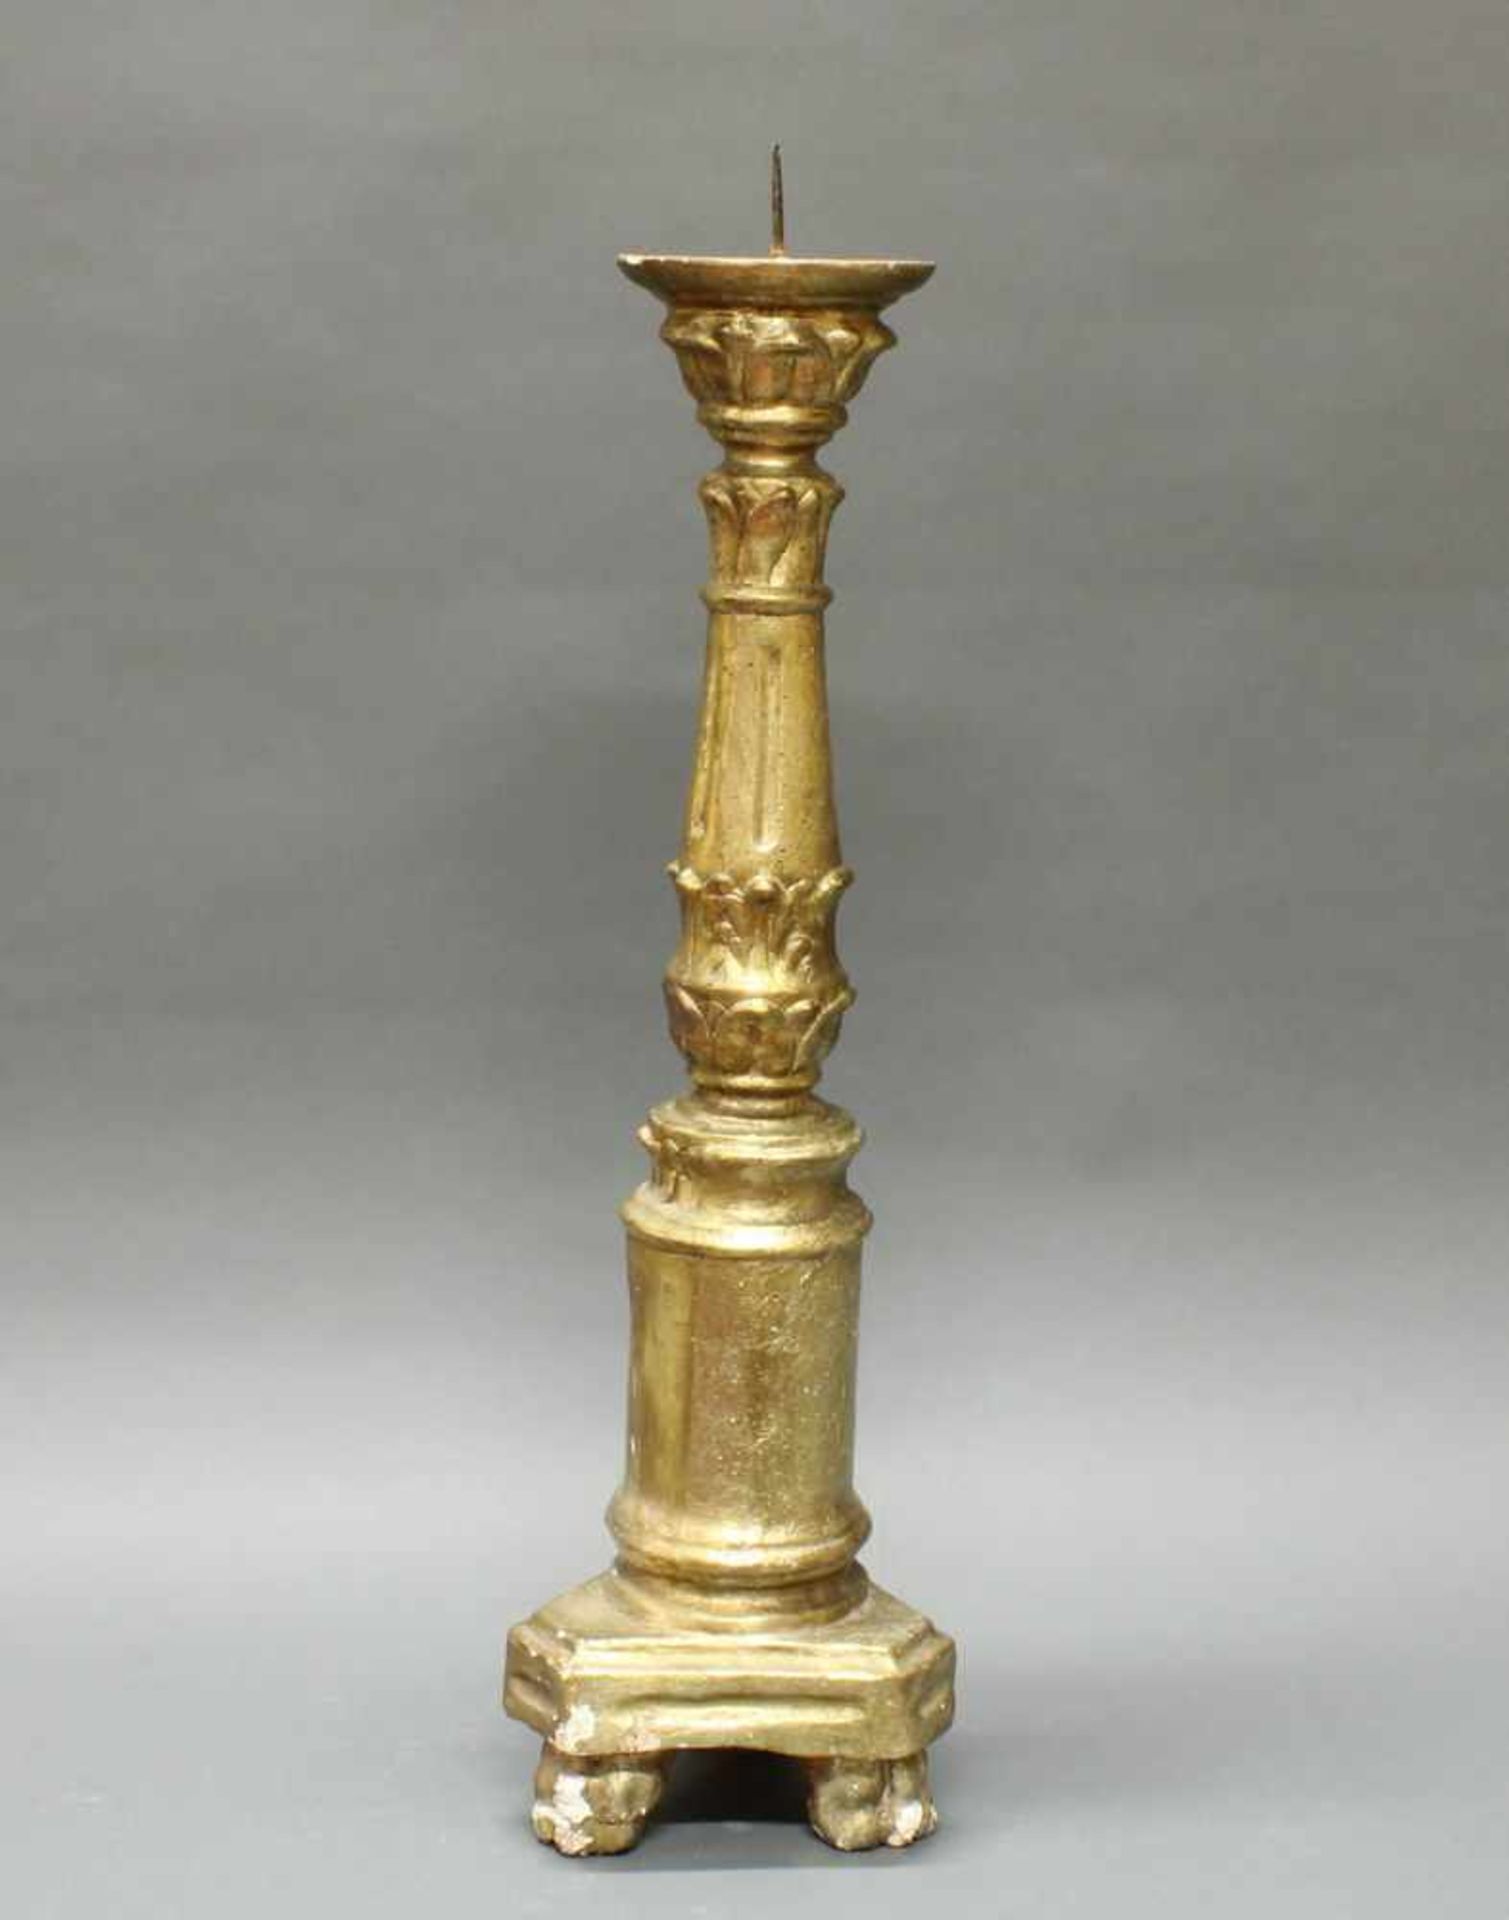 Altarkerzenleuchter, 19. Jh., Holz, goldbronziert, 67 cm hoch, Altersspuren- - -25.00 % buyer's